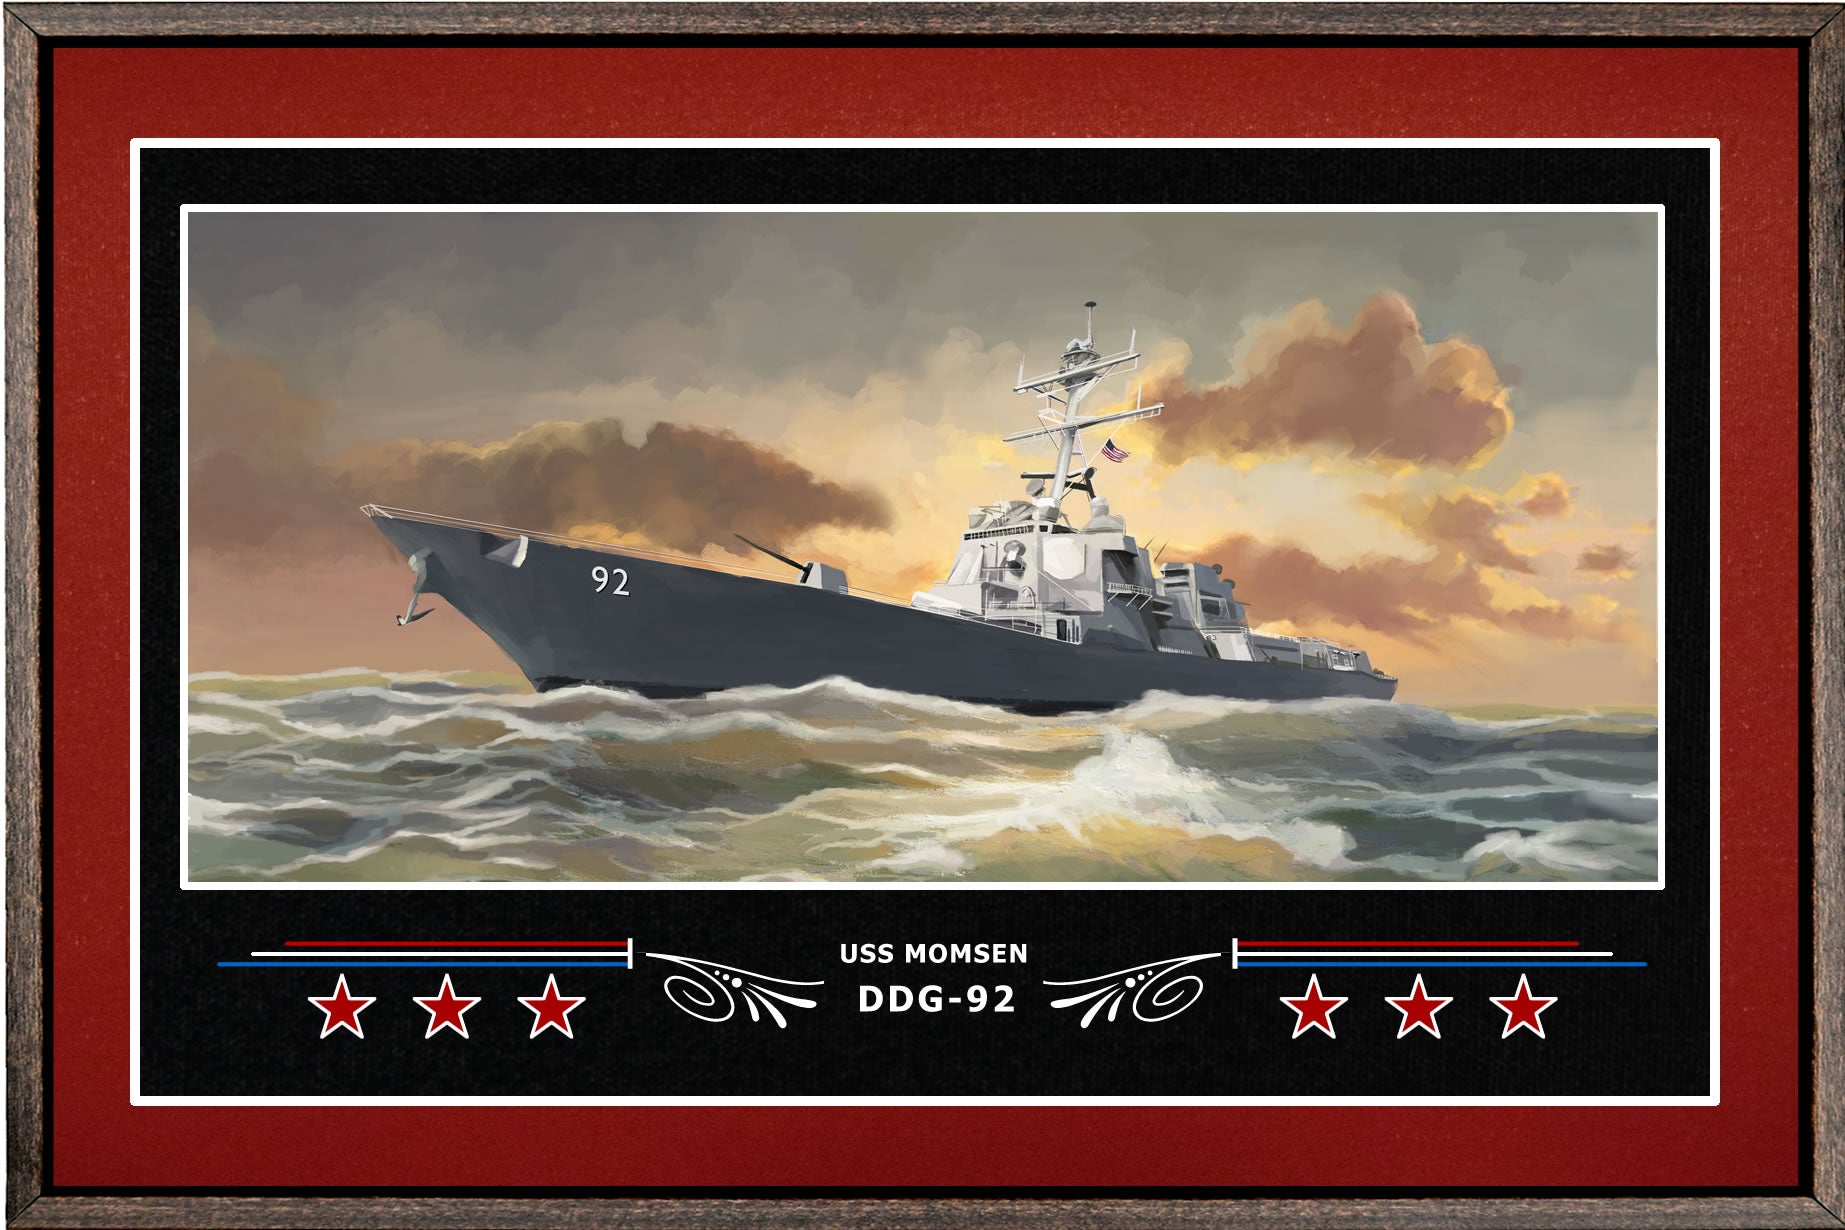 USS MOMSEN DDG 92 BOX FRAMED CANVAS ART BURGUNDY